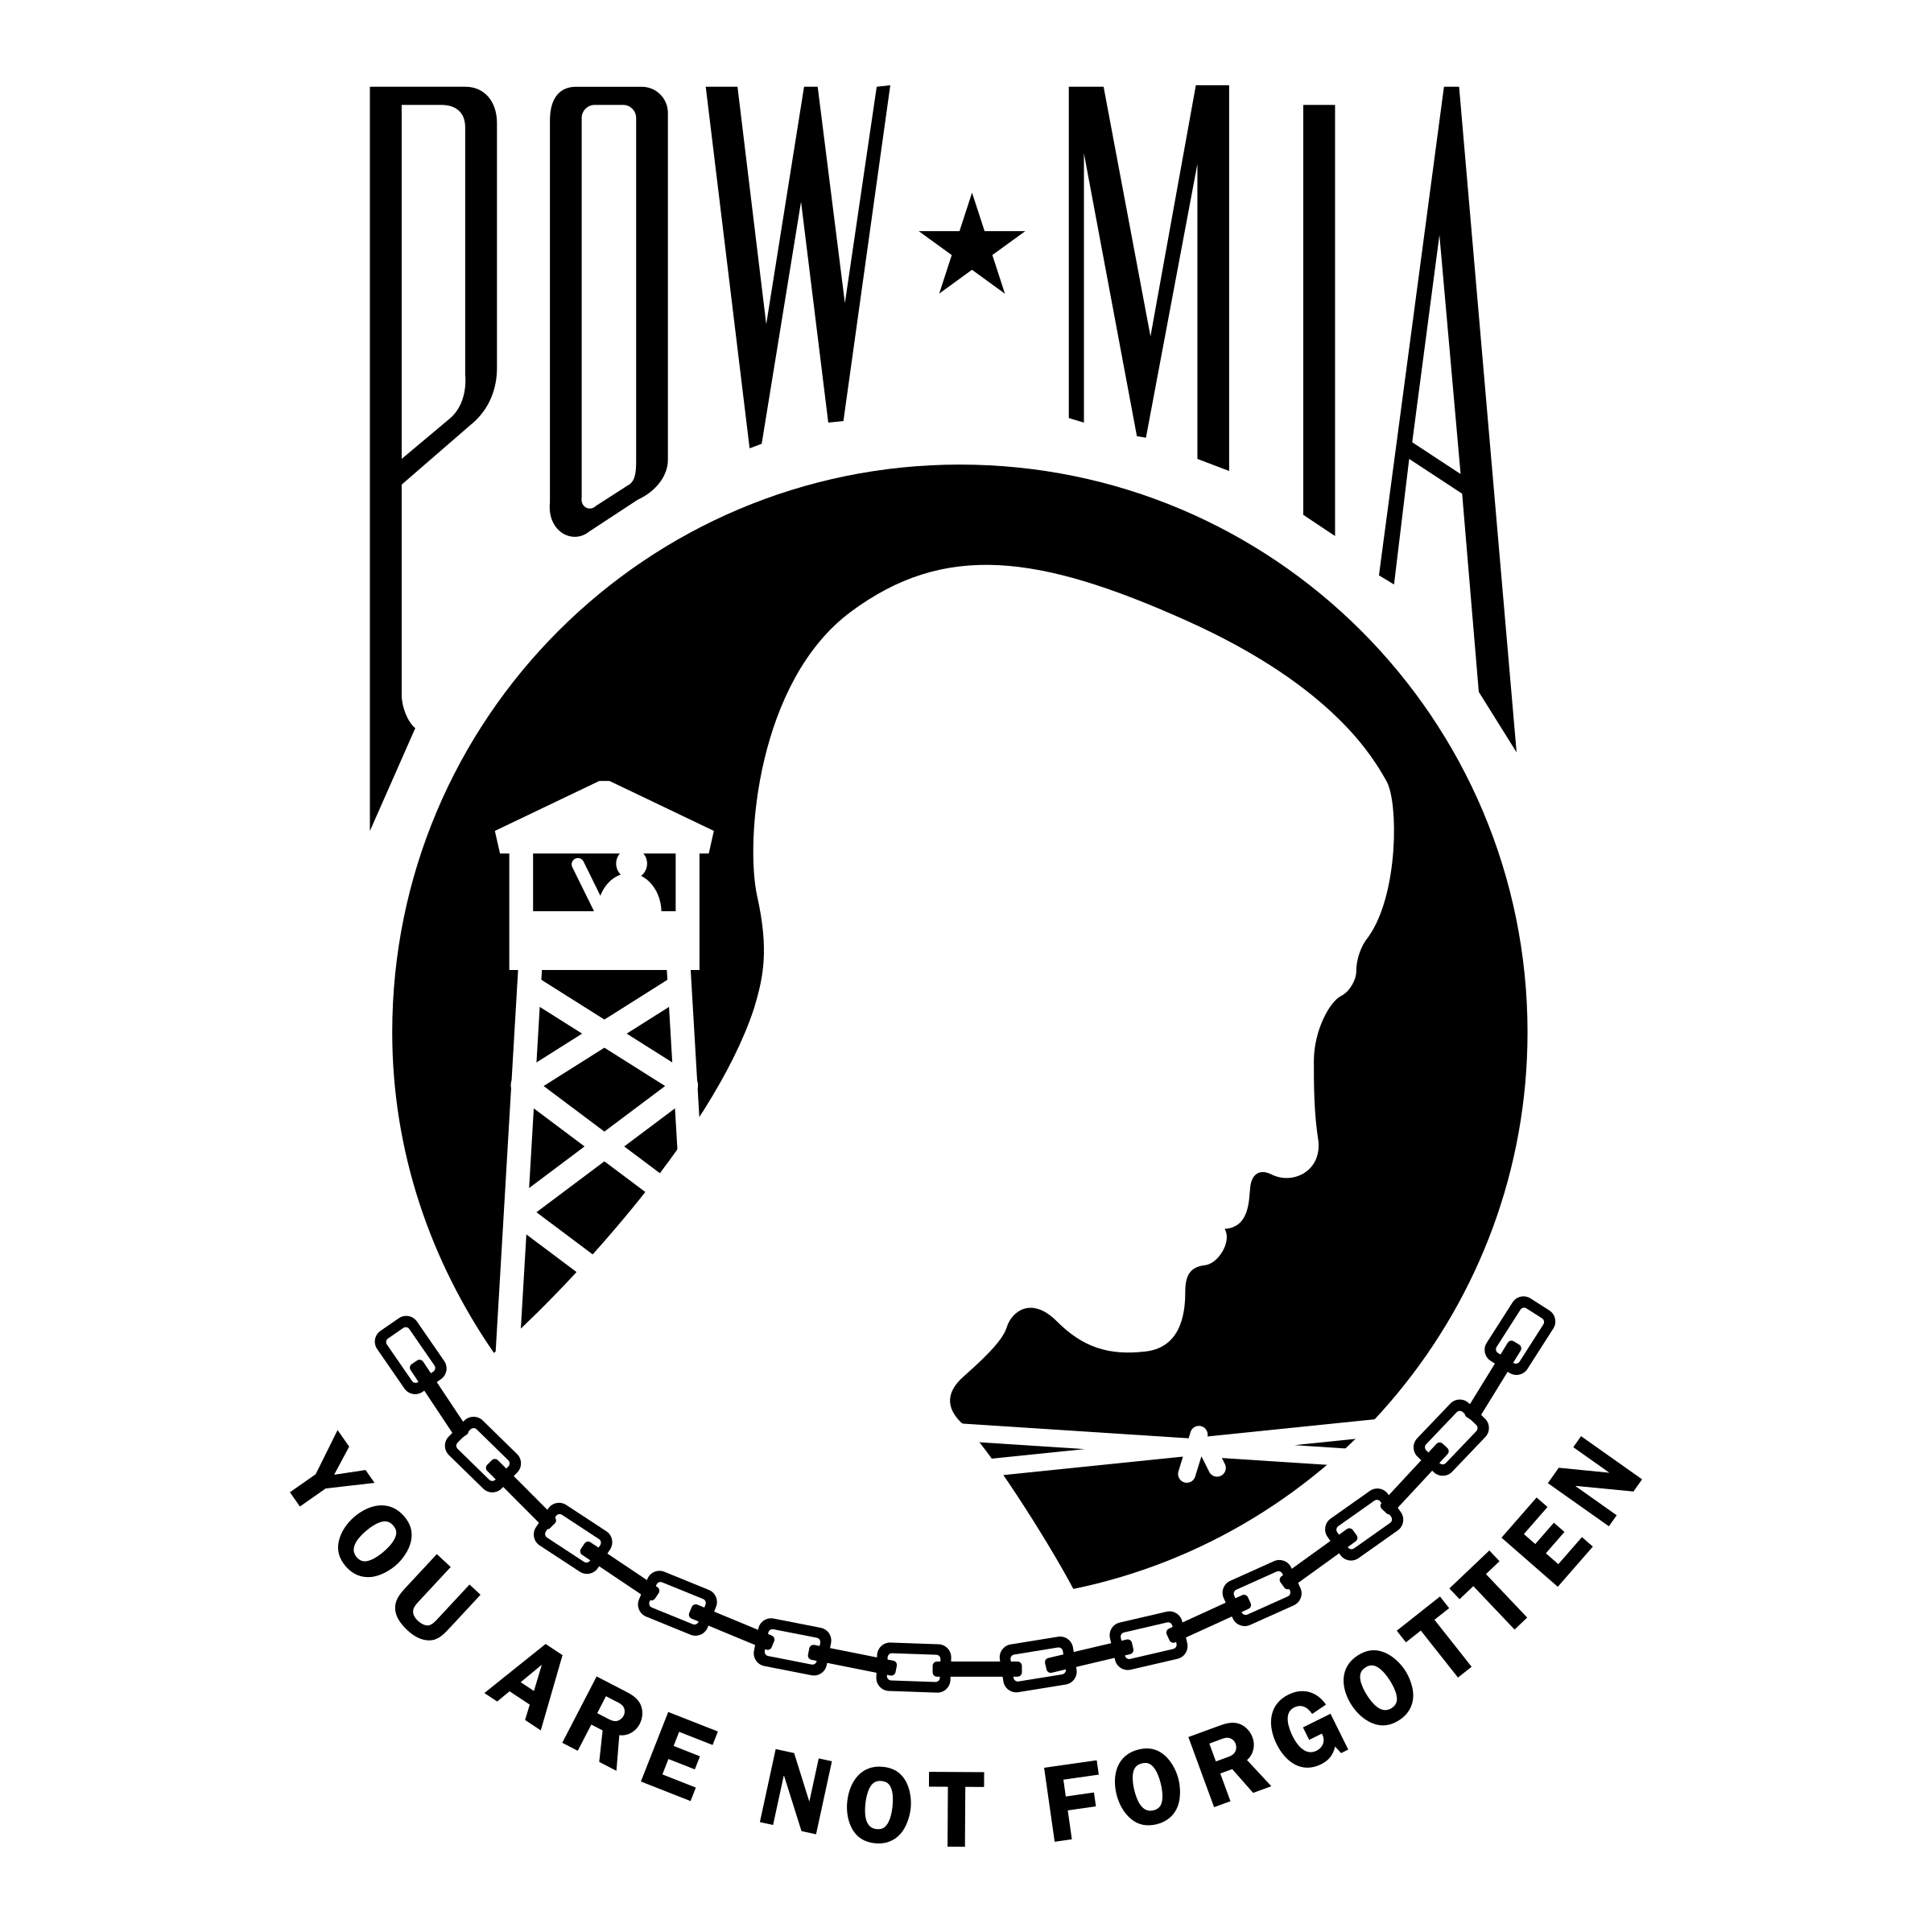 Pow Logo - POW MIA Logo PNG Transparent & SVG Vector - Freebie Supply